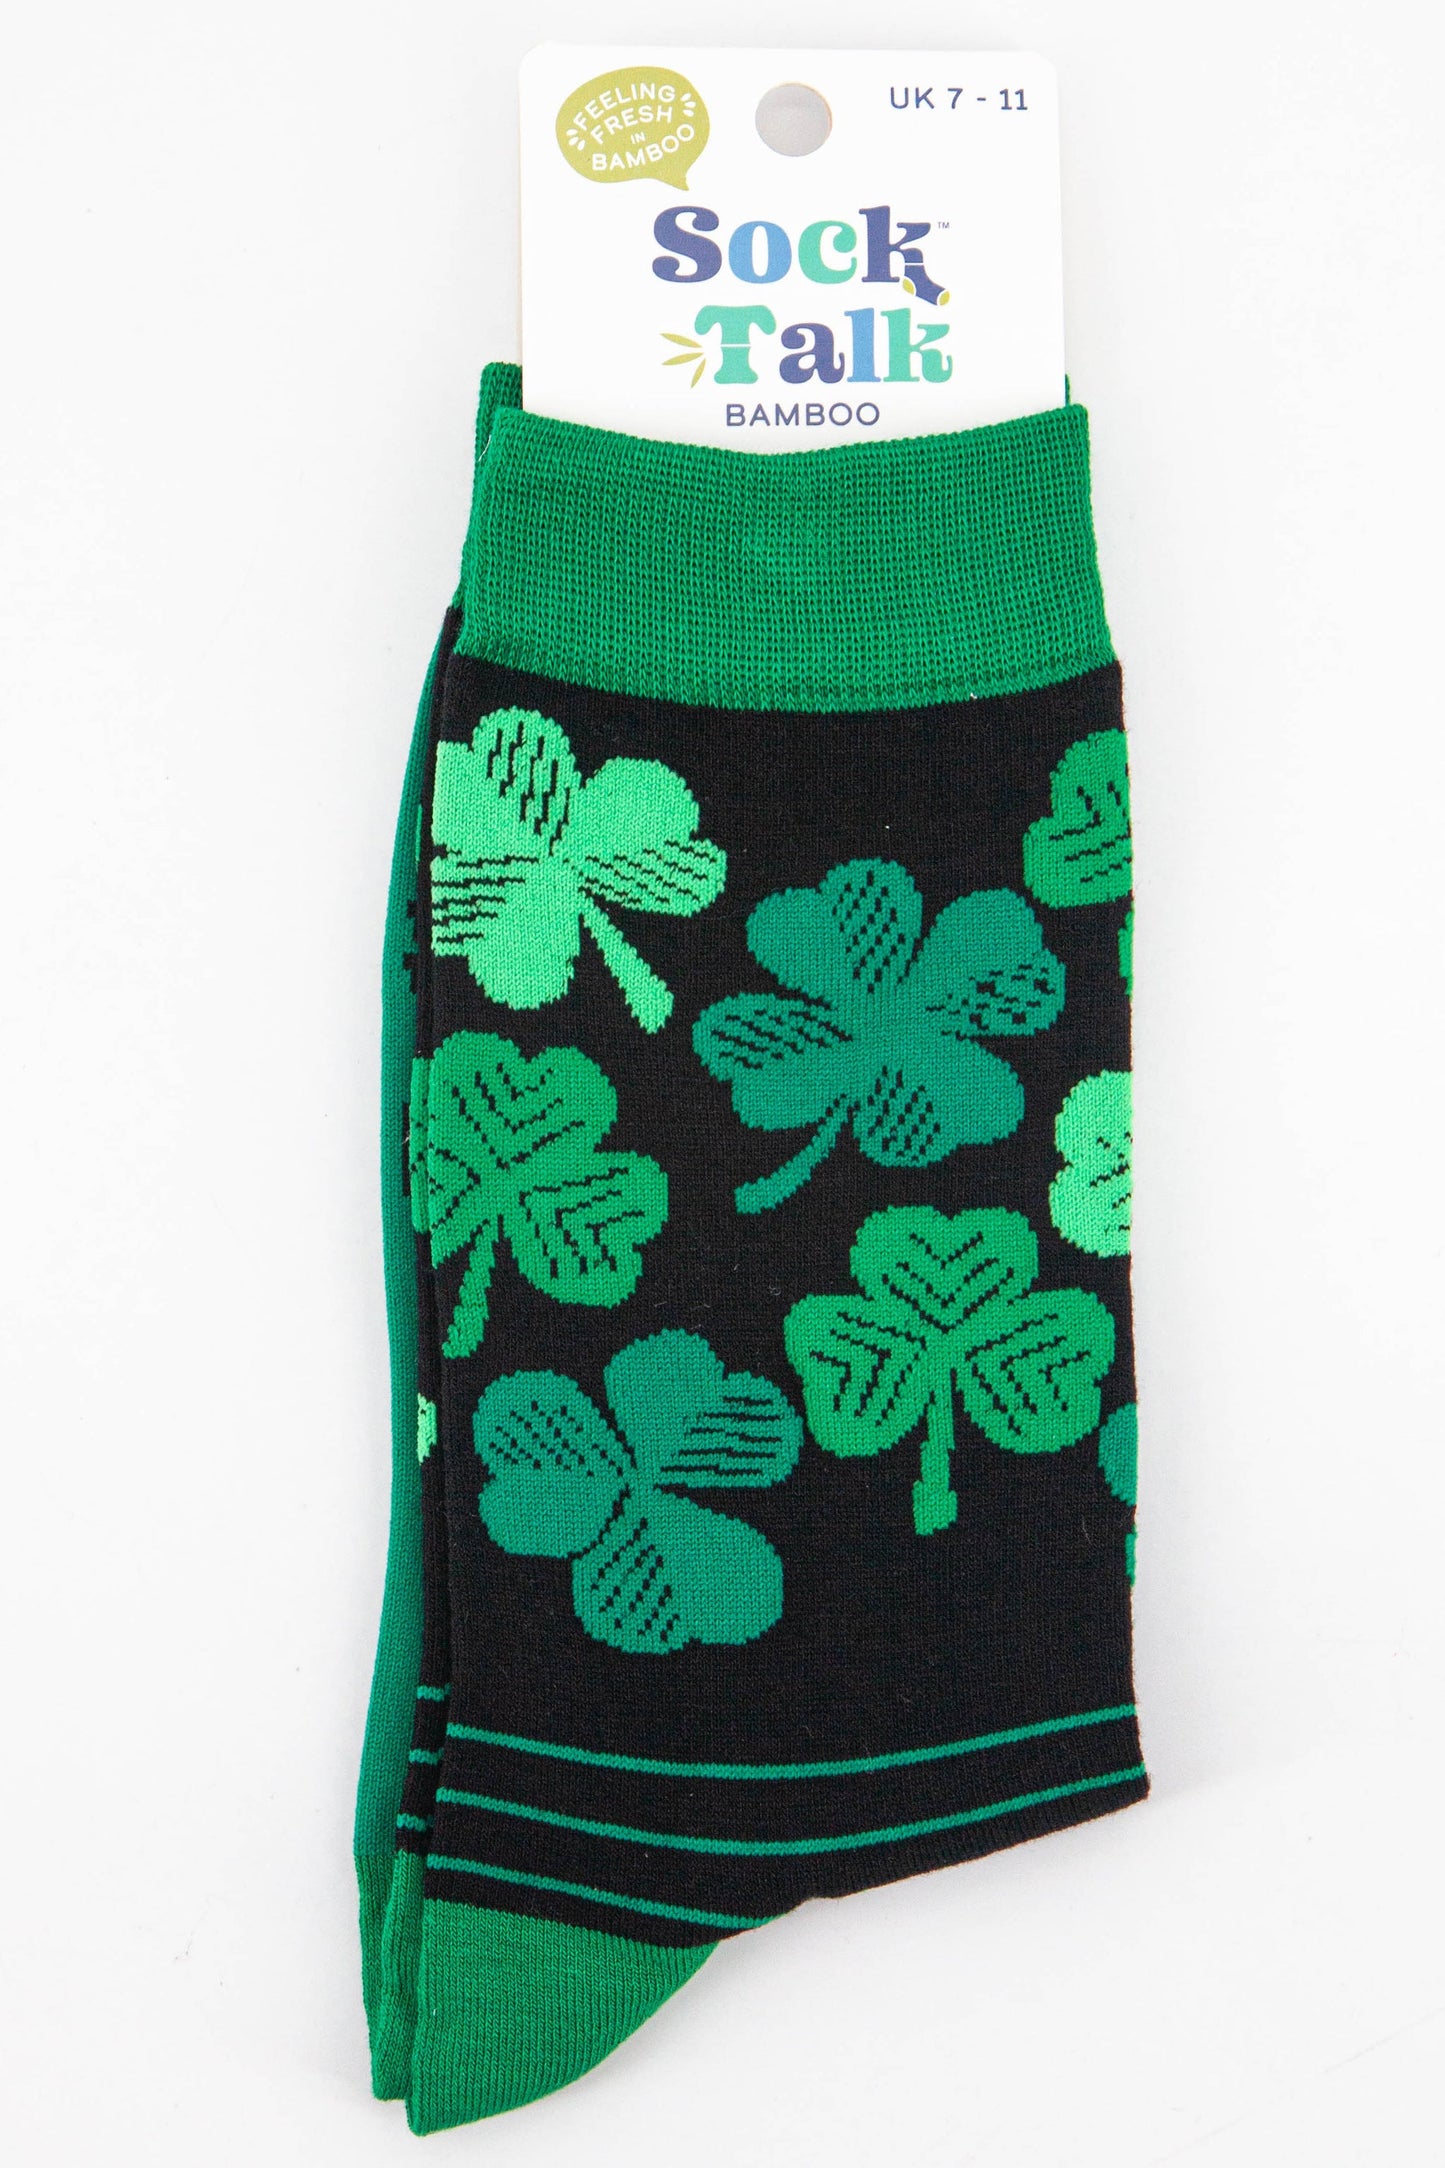 mens bamboo socks uk size 7-11 featuring an Irish shamrock pattern